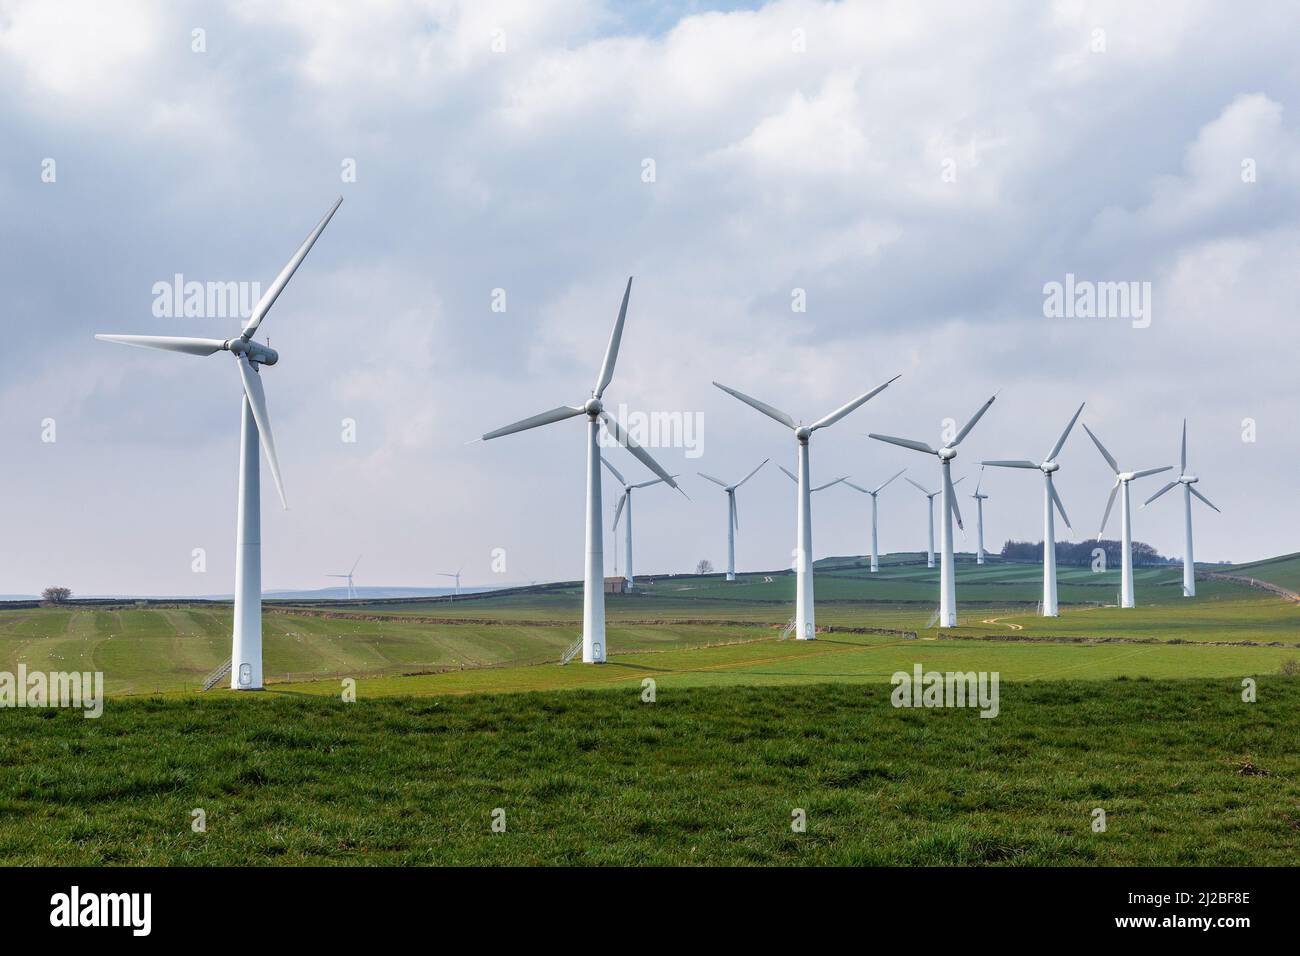 Turbinas eólicas de Yorkshire que generan electricidad de energía verde. El concepto de energía global Ecology.Clean salva al mundo. Fotografías de alta calidad Foto de stock